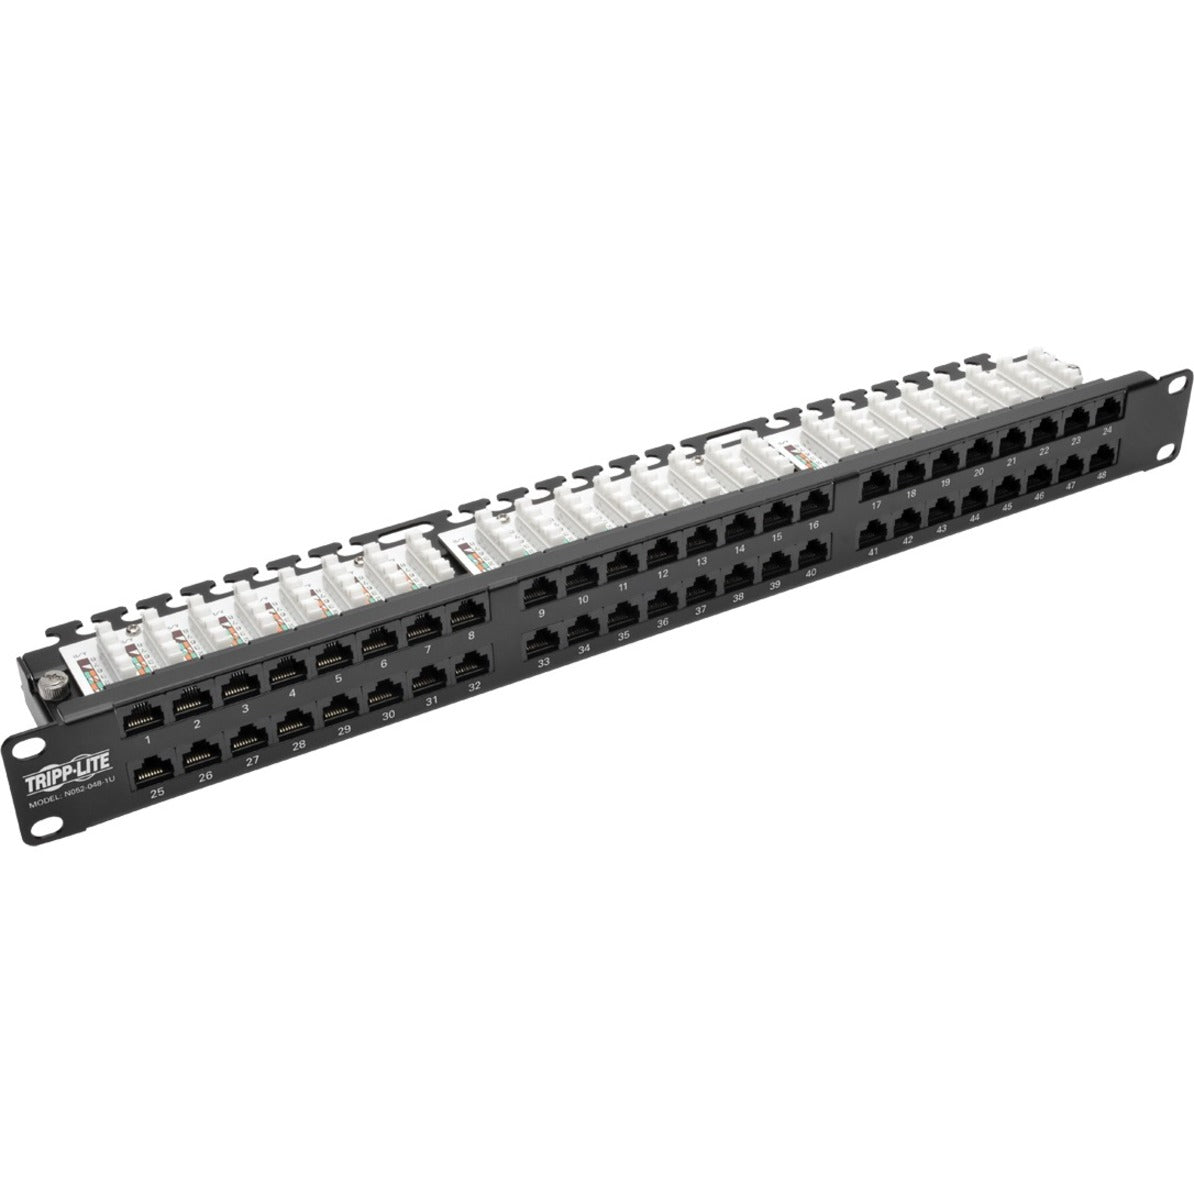 Tripp Lite N052-048-1U 48-Port 1U Rack-Mount High-Density Patch Panel TAA Compliant Lifetime Warranty